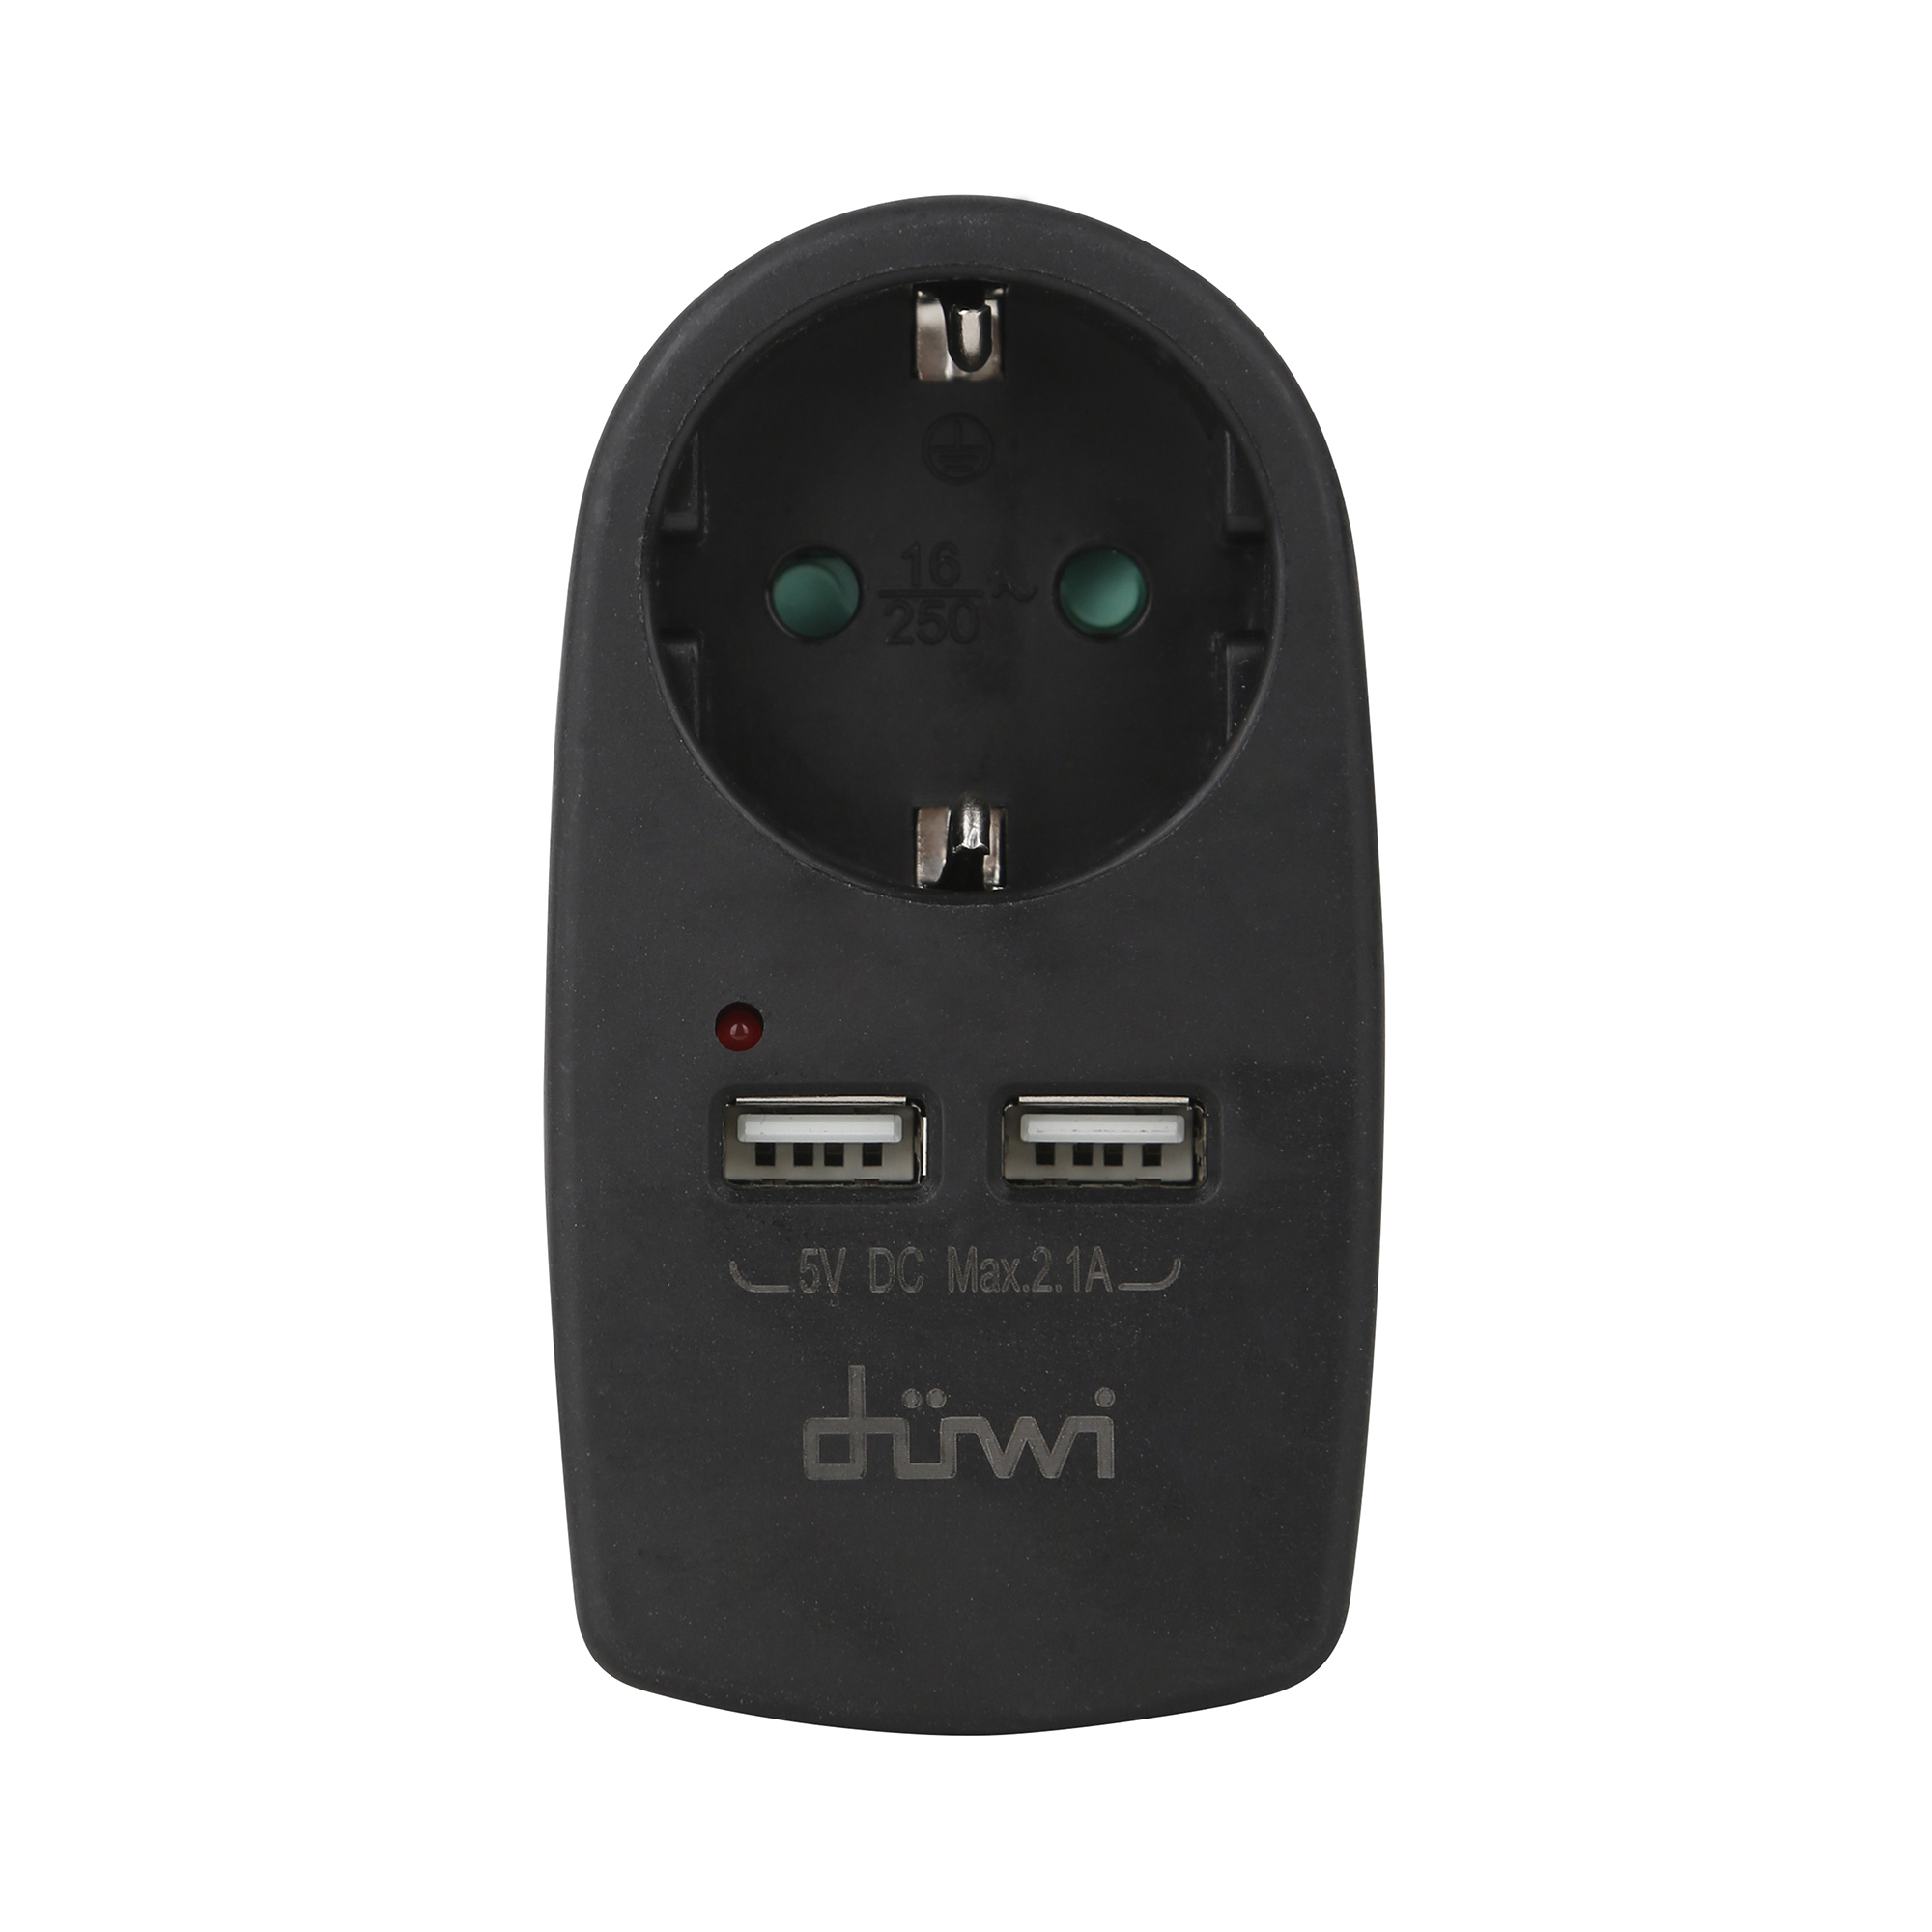 Адаптер розеточный Duwi 1 гнездо + 2 USB порта, с заземлением, черный, 16A, 3500Вт адаптер переходник для крепления на дрель matrix